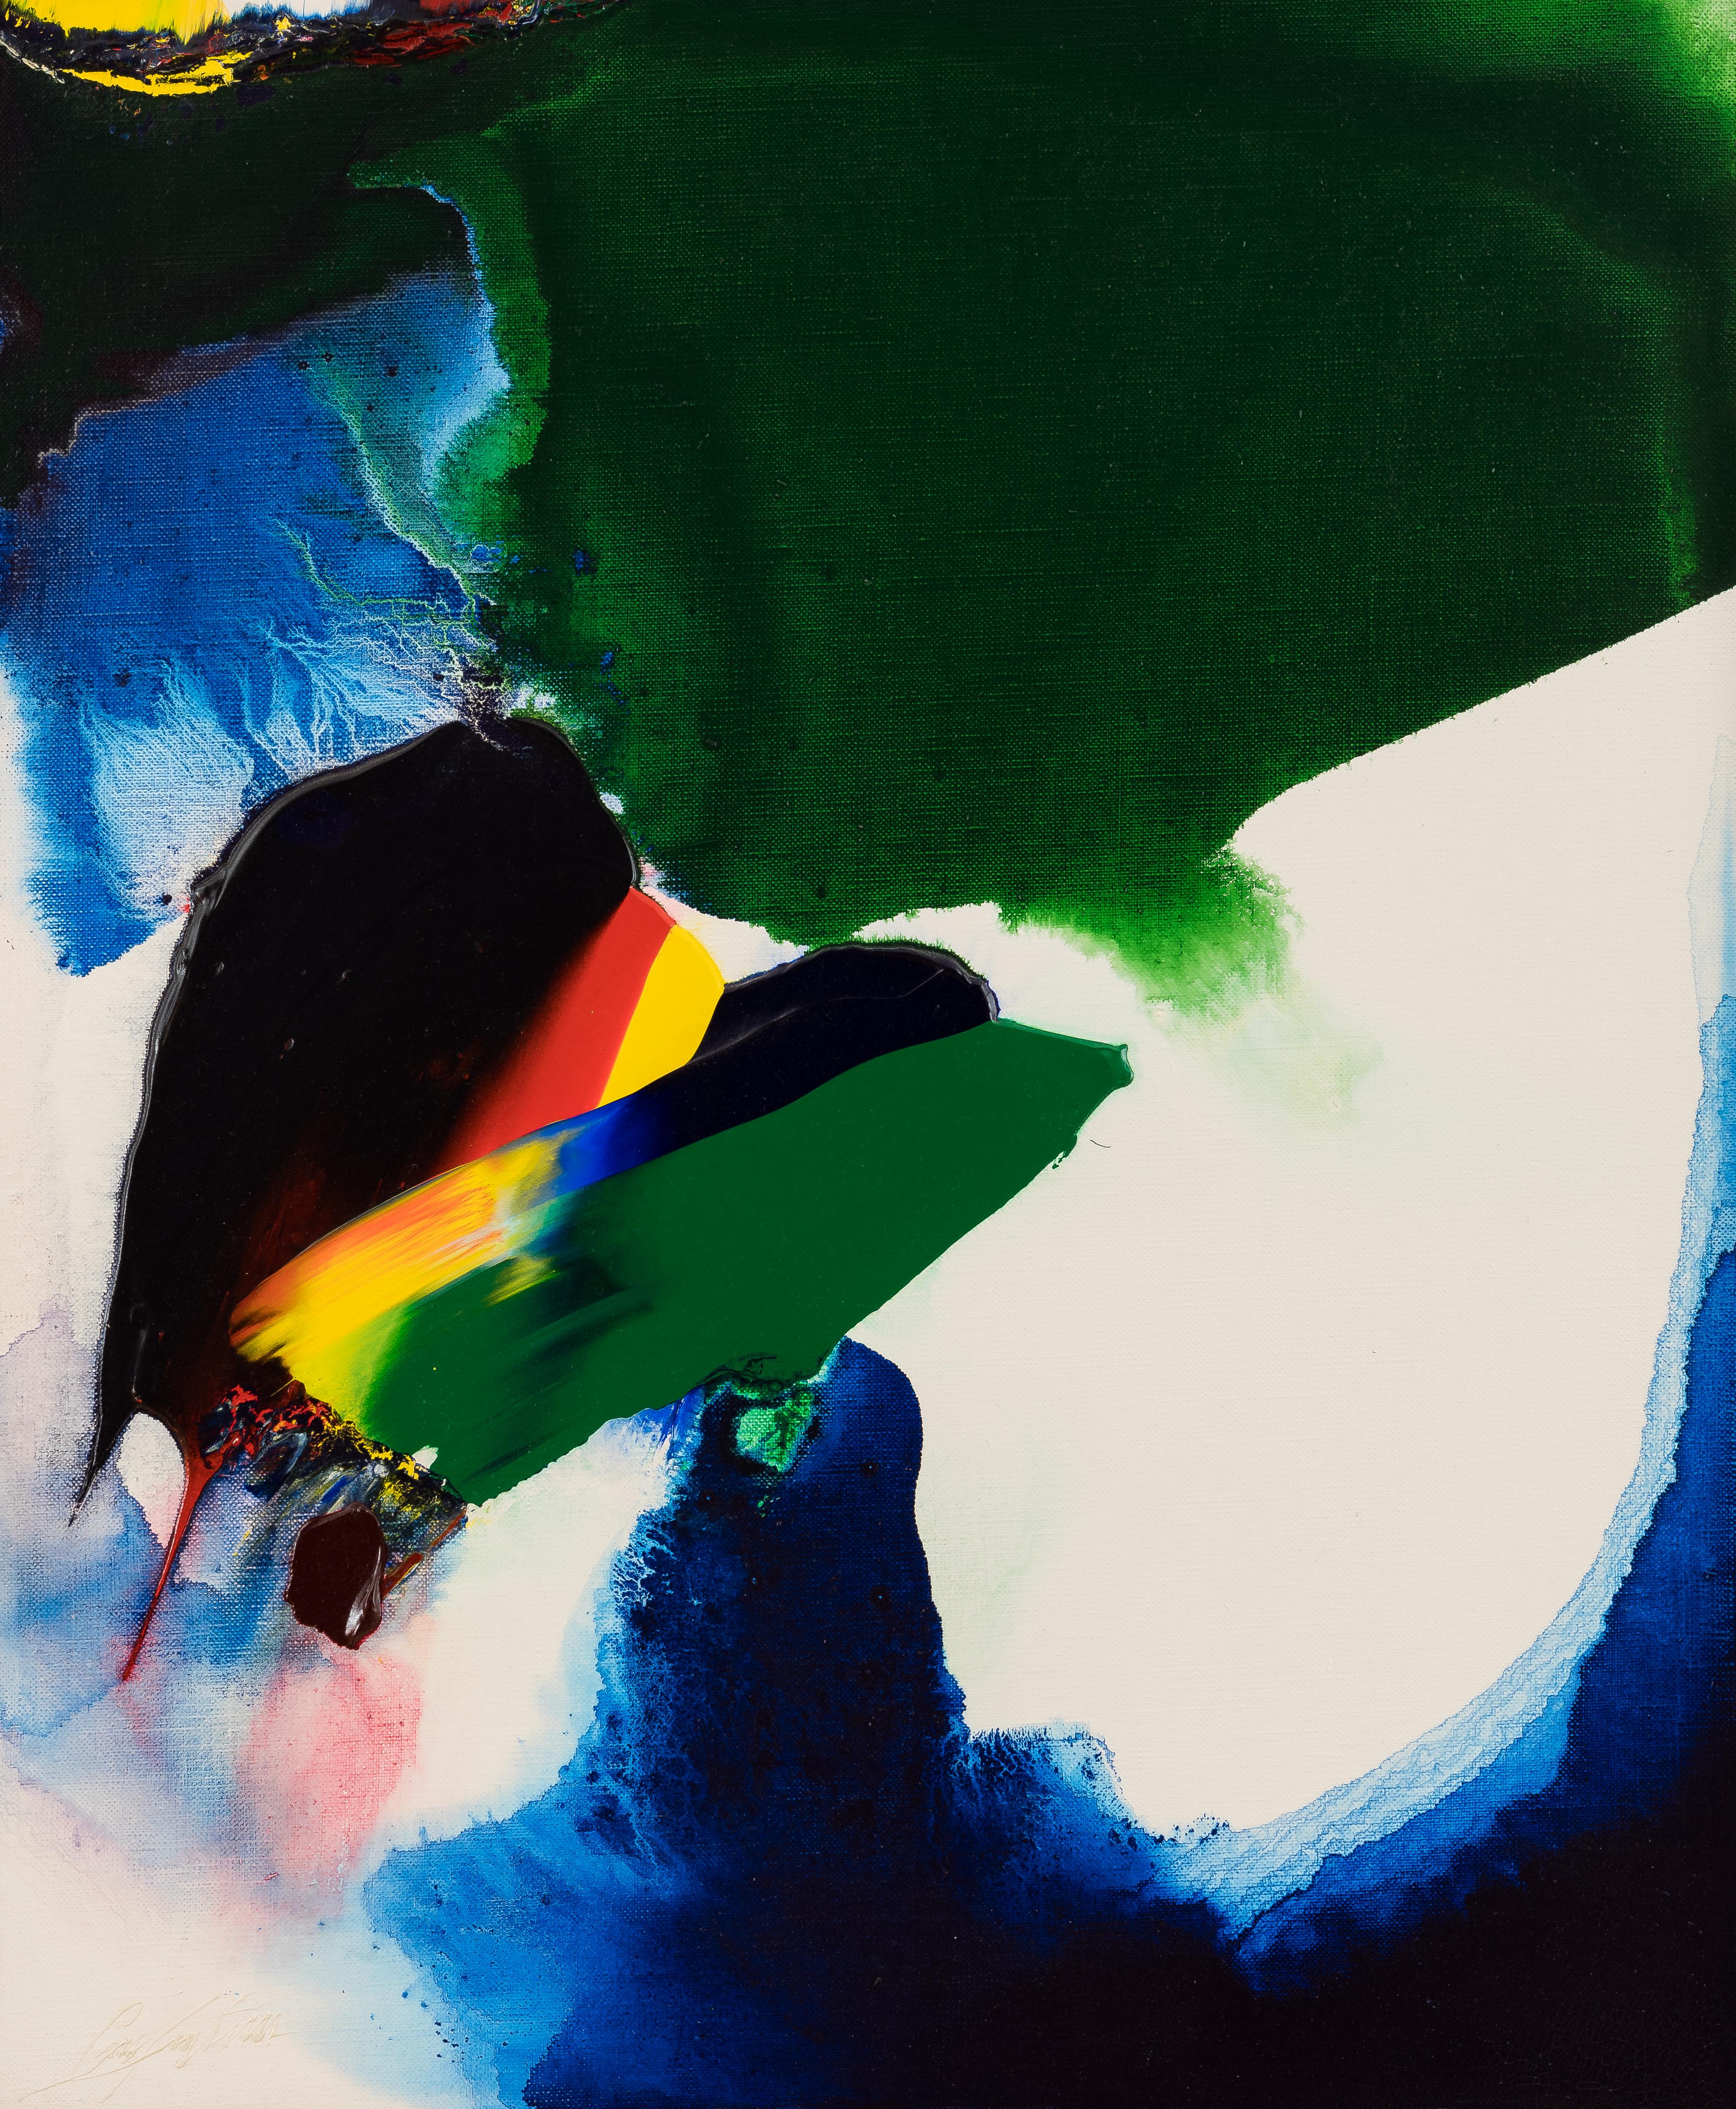 Phenomena comme Byron de PAUL JENKINS - Expressionniste abstrait, couleur